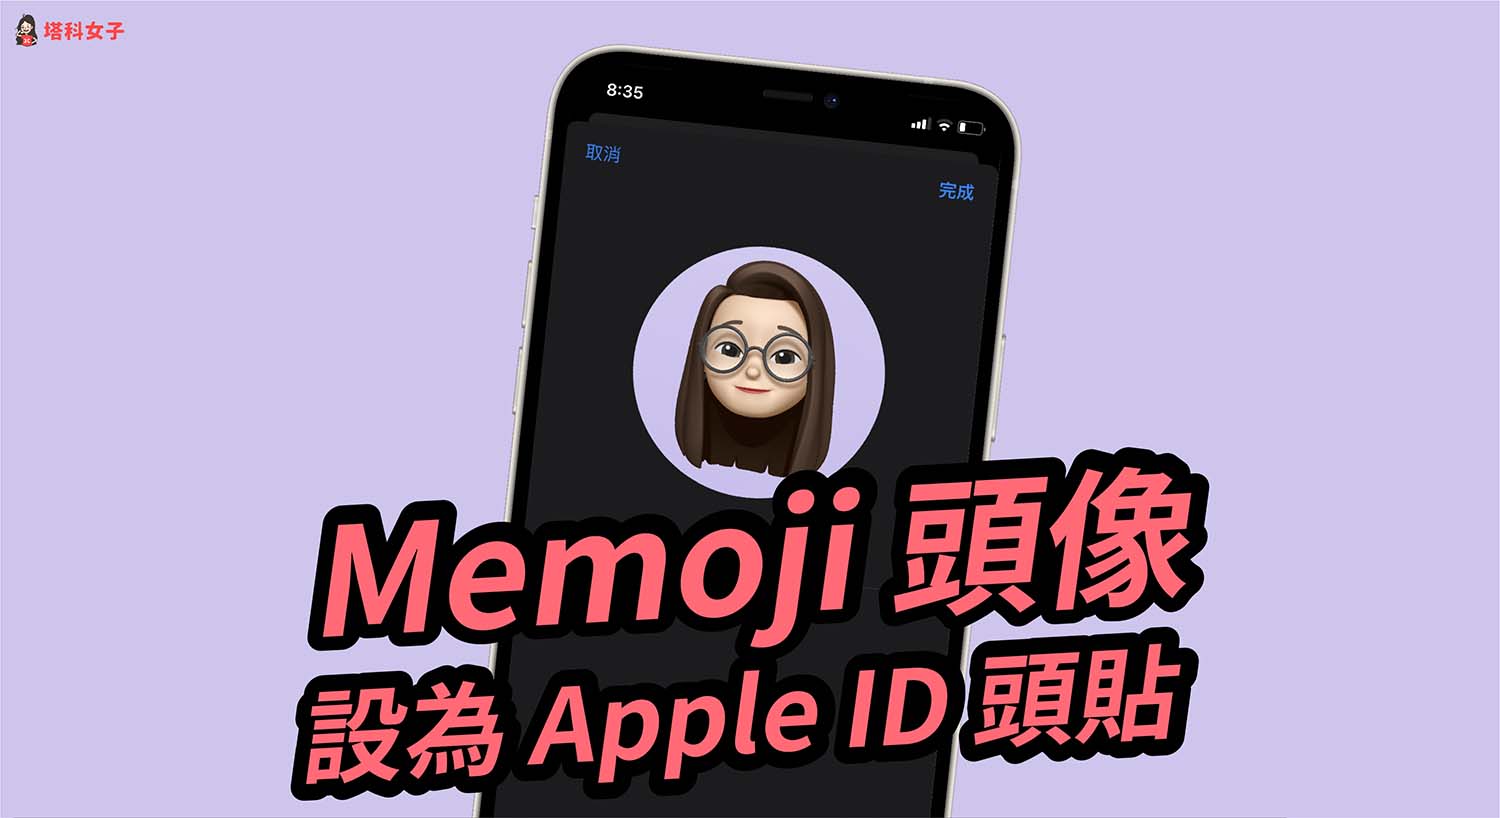 Memoji 頭像如何設為 Apple ID 大頭貼？iOS 設定教學